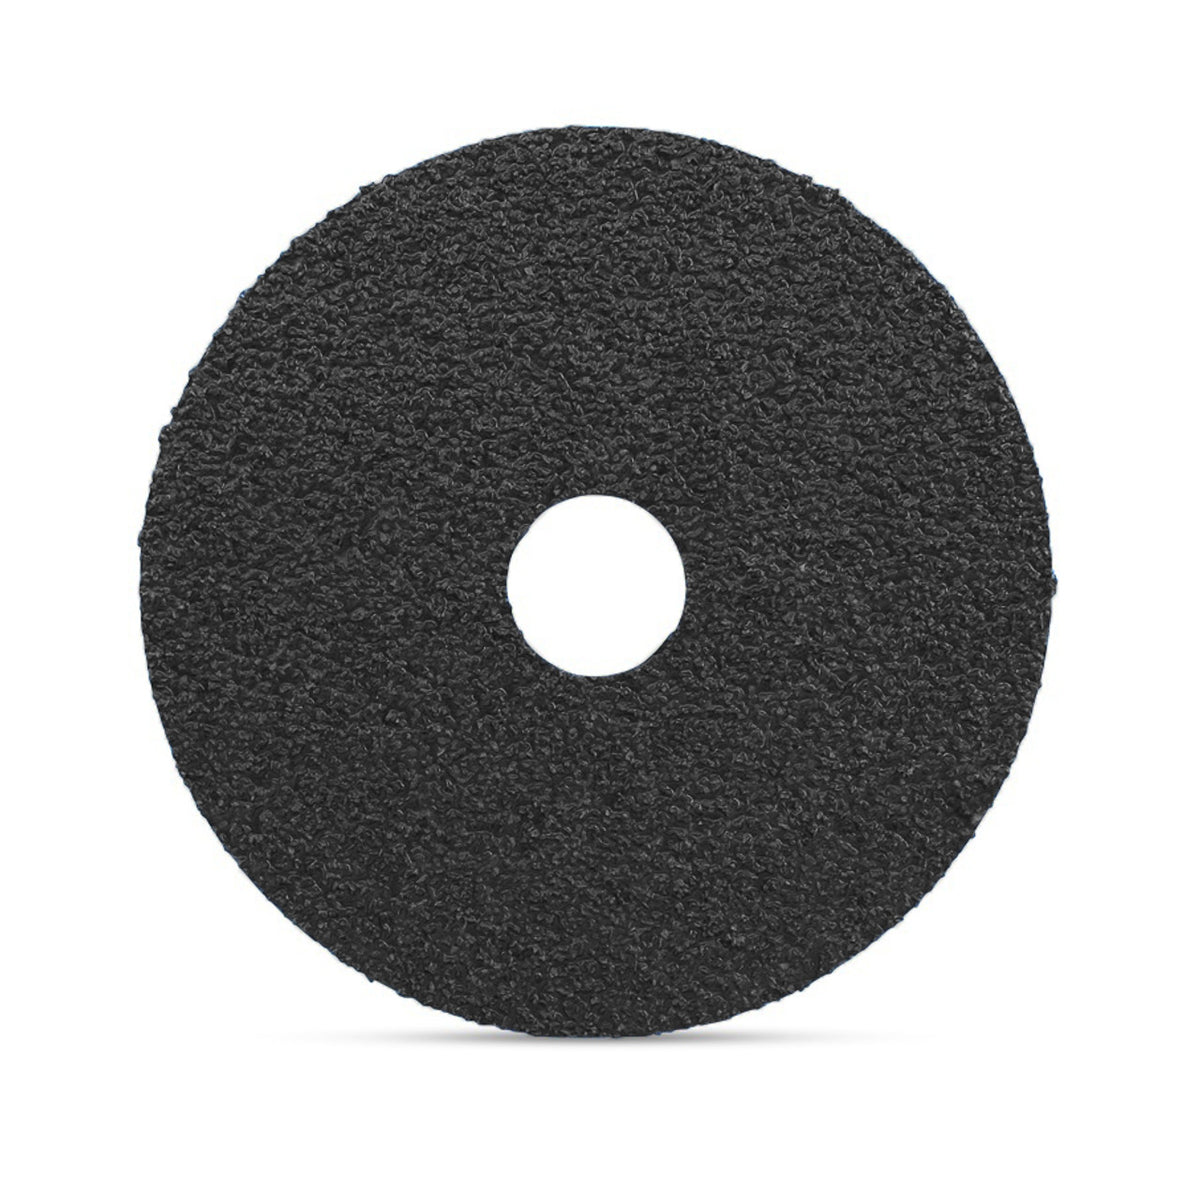 4" x 5/8" Silicon Carbide Resin Fiber Sanding Discs